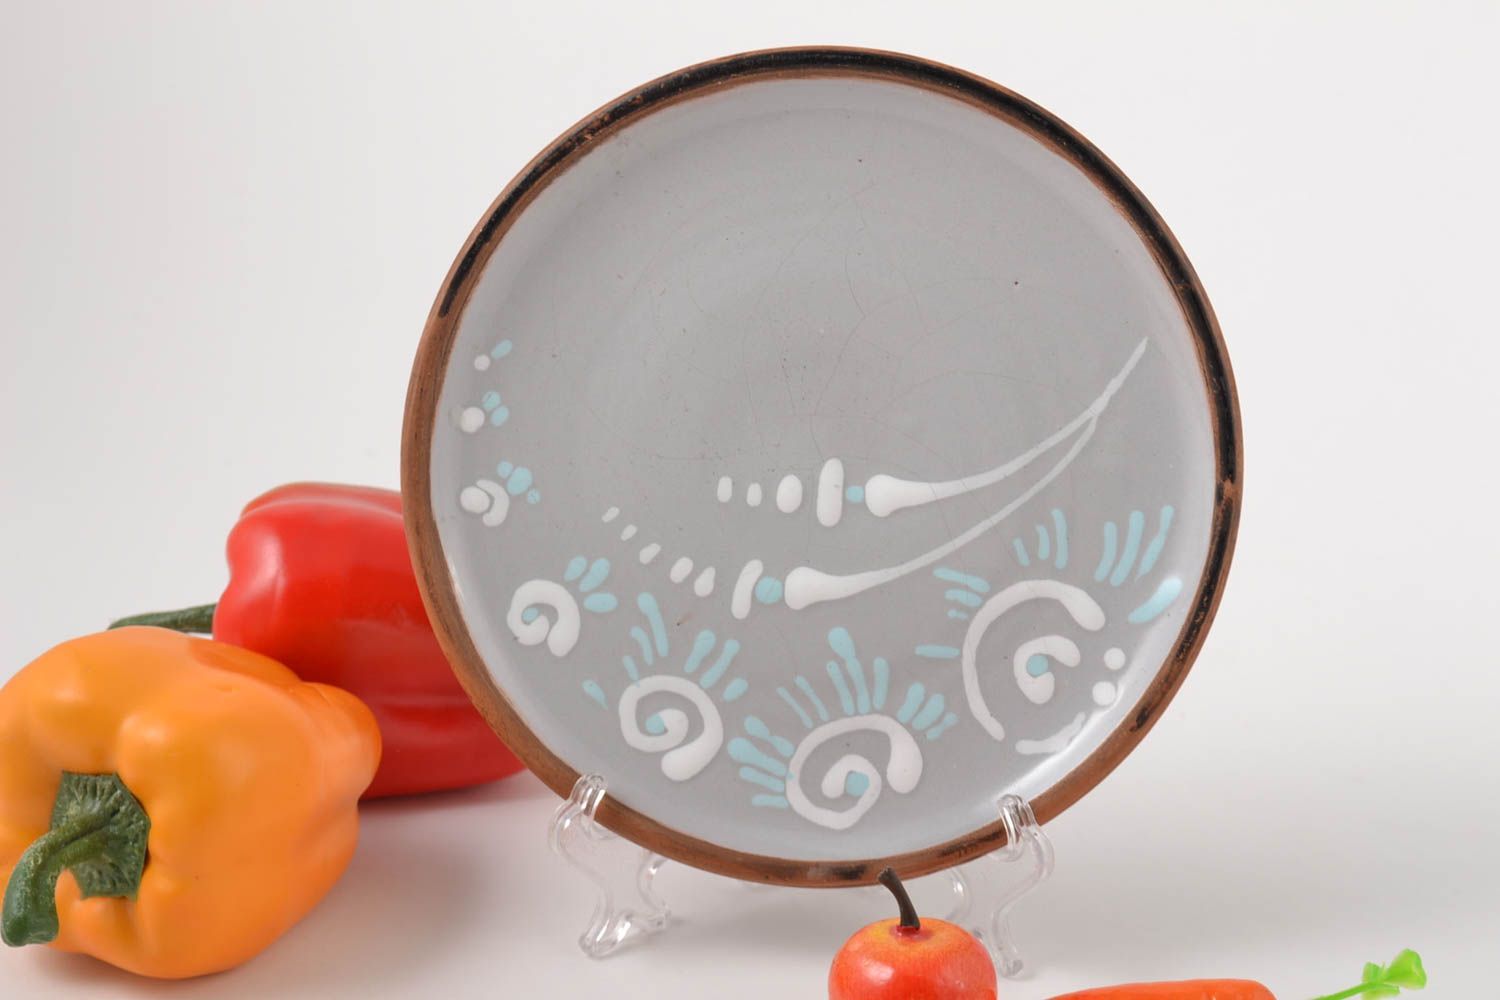 Plato de cerámica artesanal utensilio de cocina menaje del hogar pintado foto 1